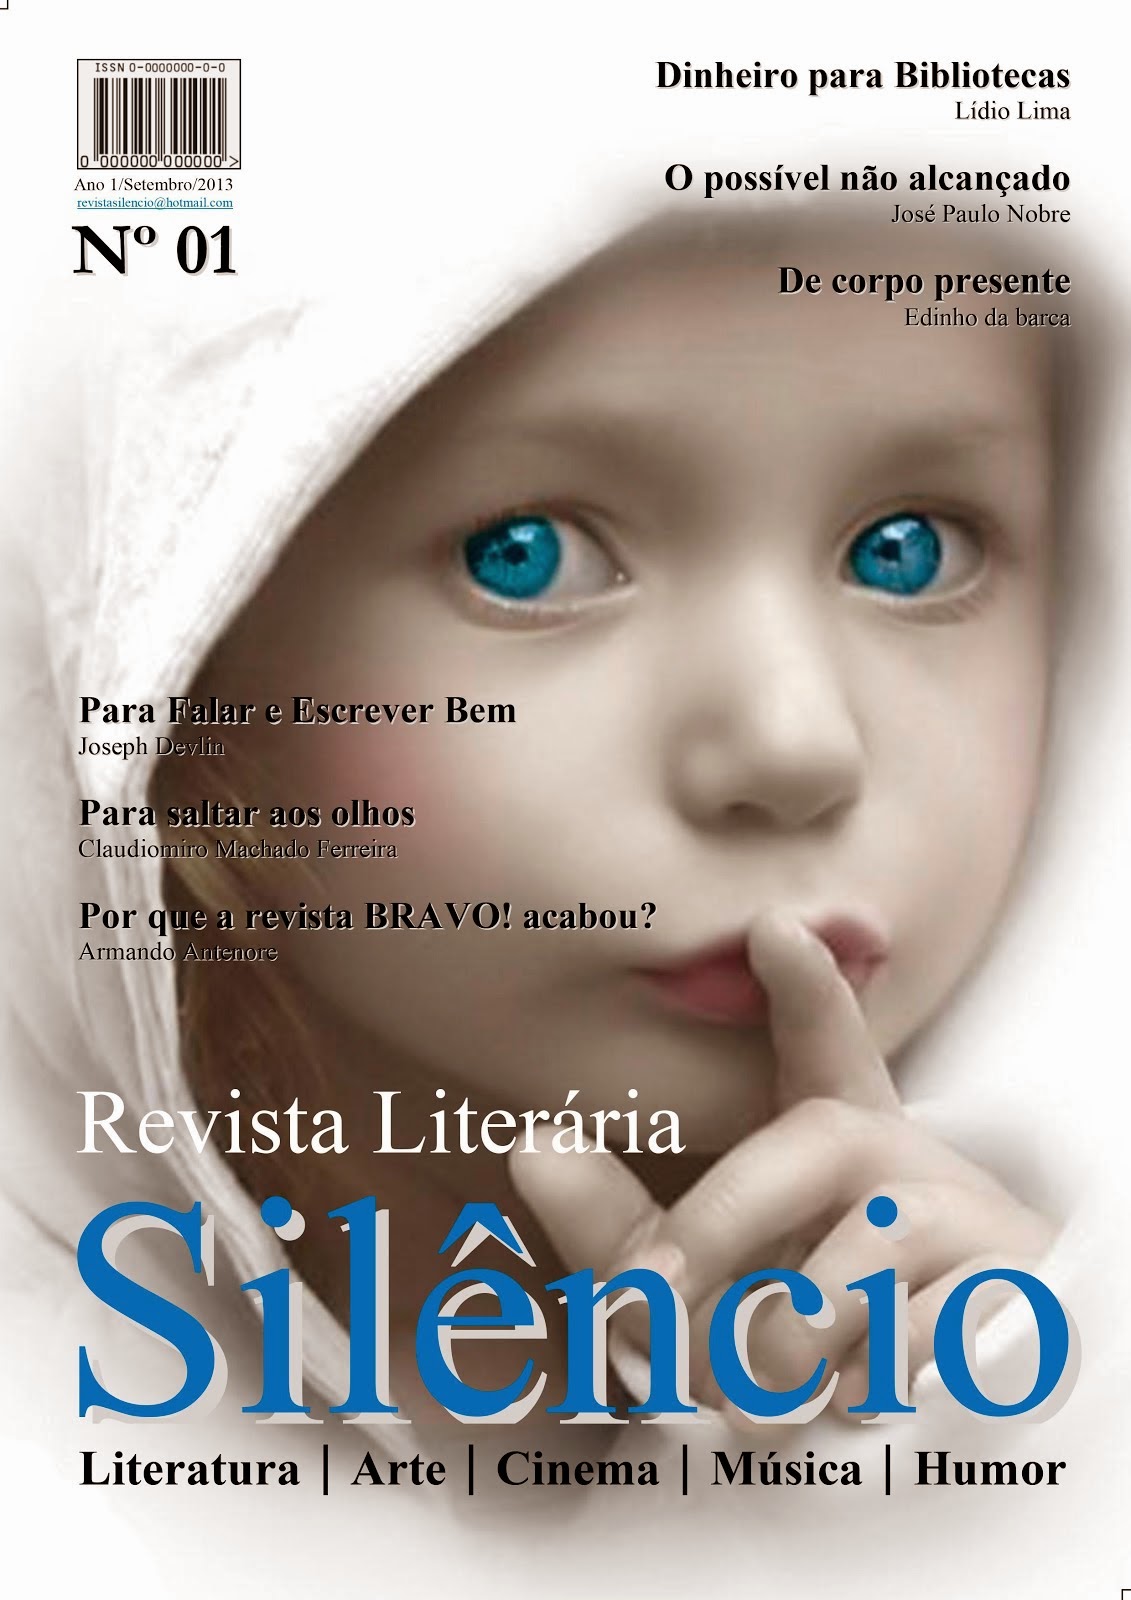 Revista Literária Silêncio nº01